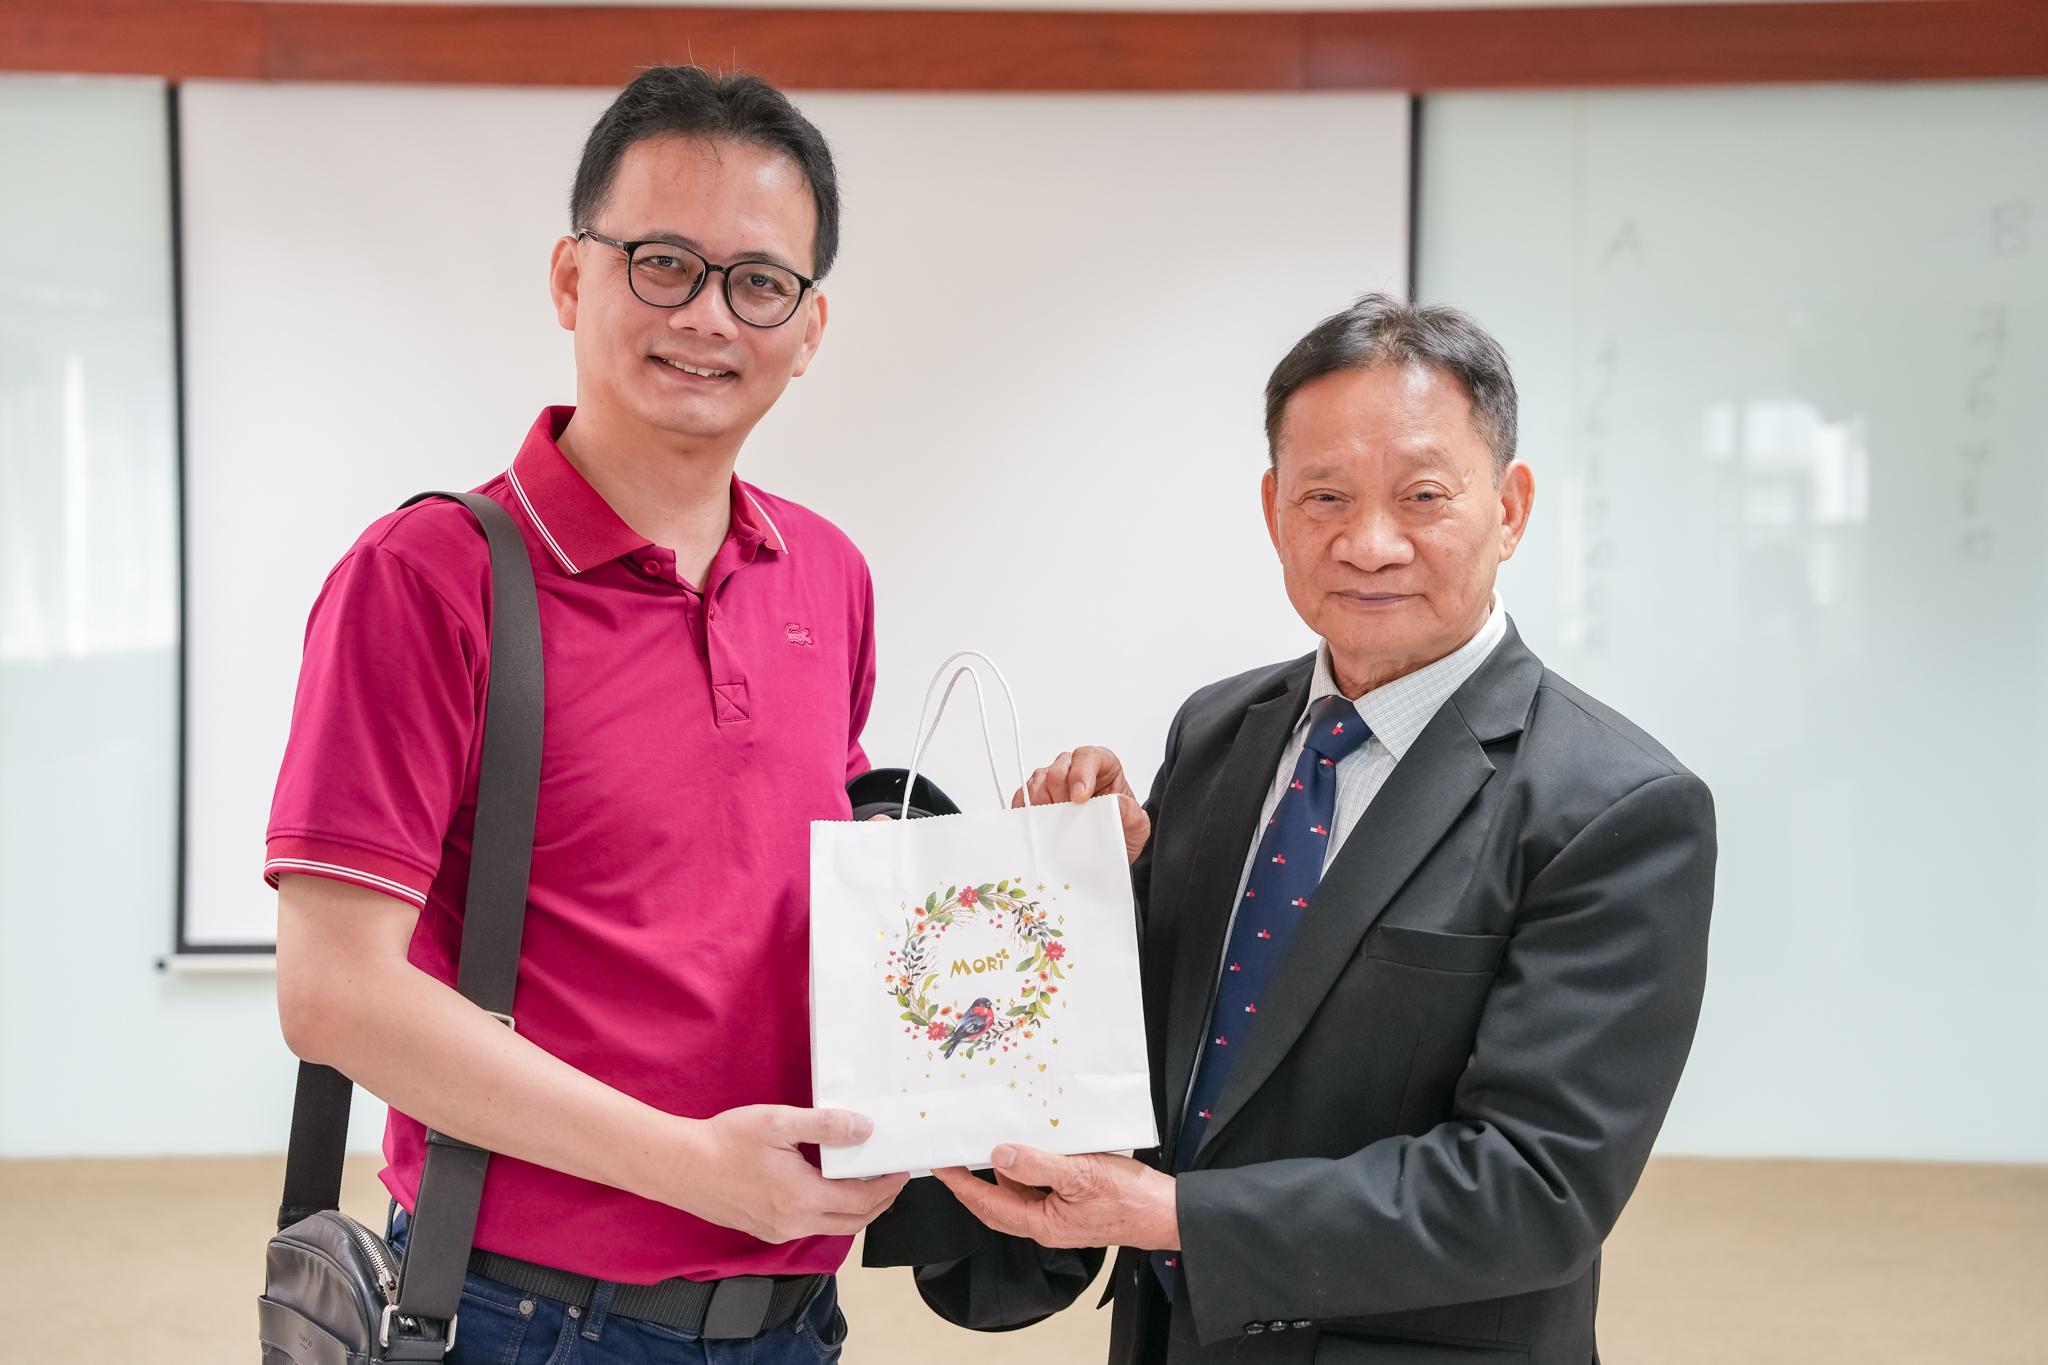 SIU ký kết hợp tác cùng Trường Đại học Tịnh Nghi